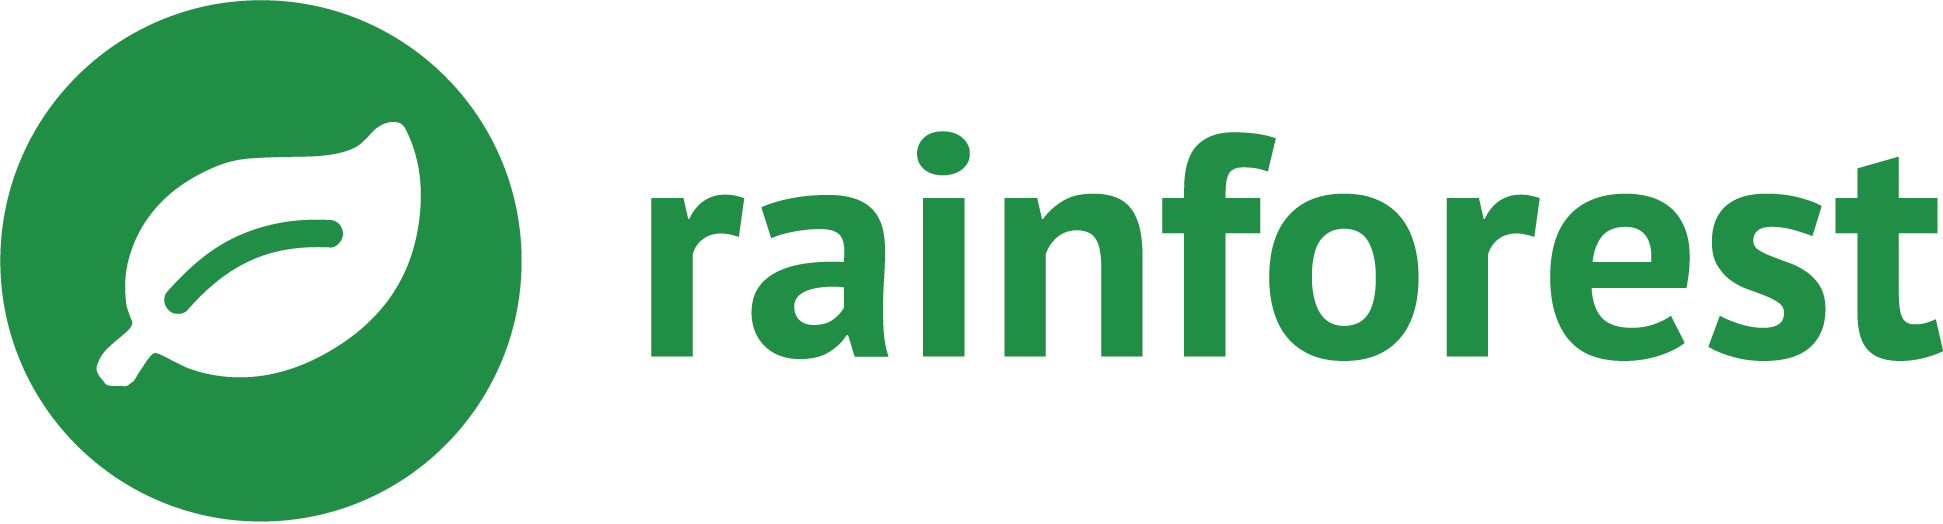 Rainforest Qa Logo (1943x524)